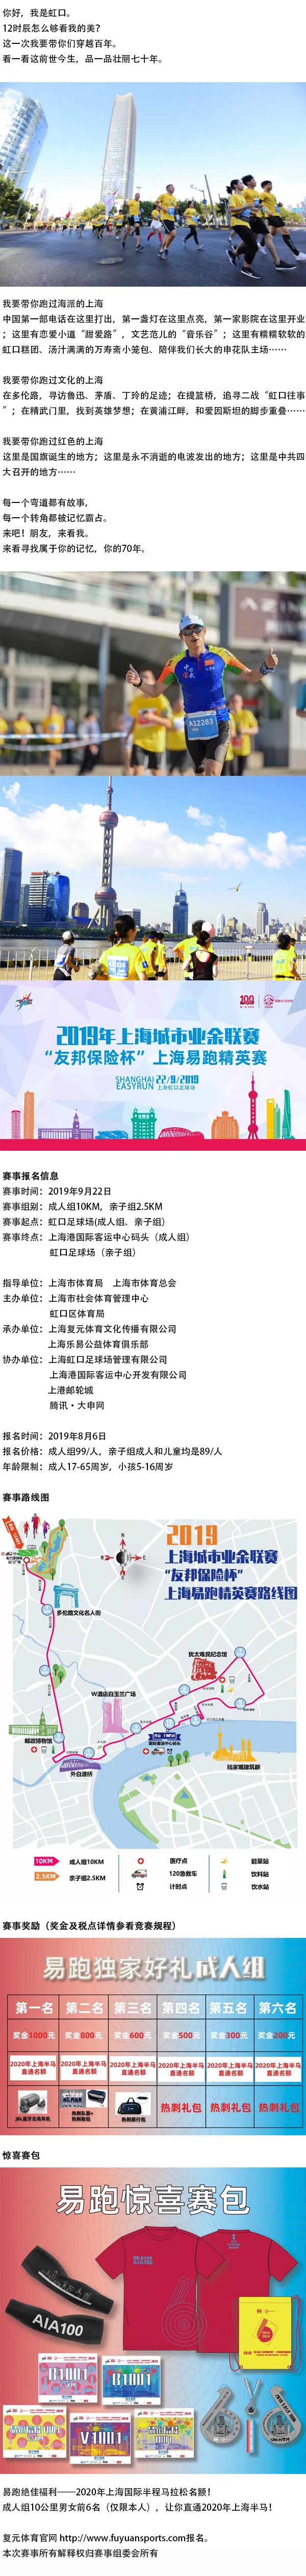 2019上海城市业余联赛“友邦保险杯”上海易跑精英赛